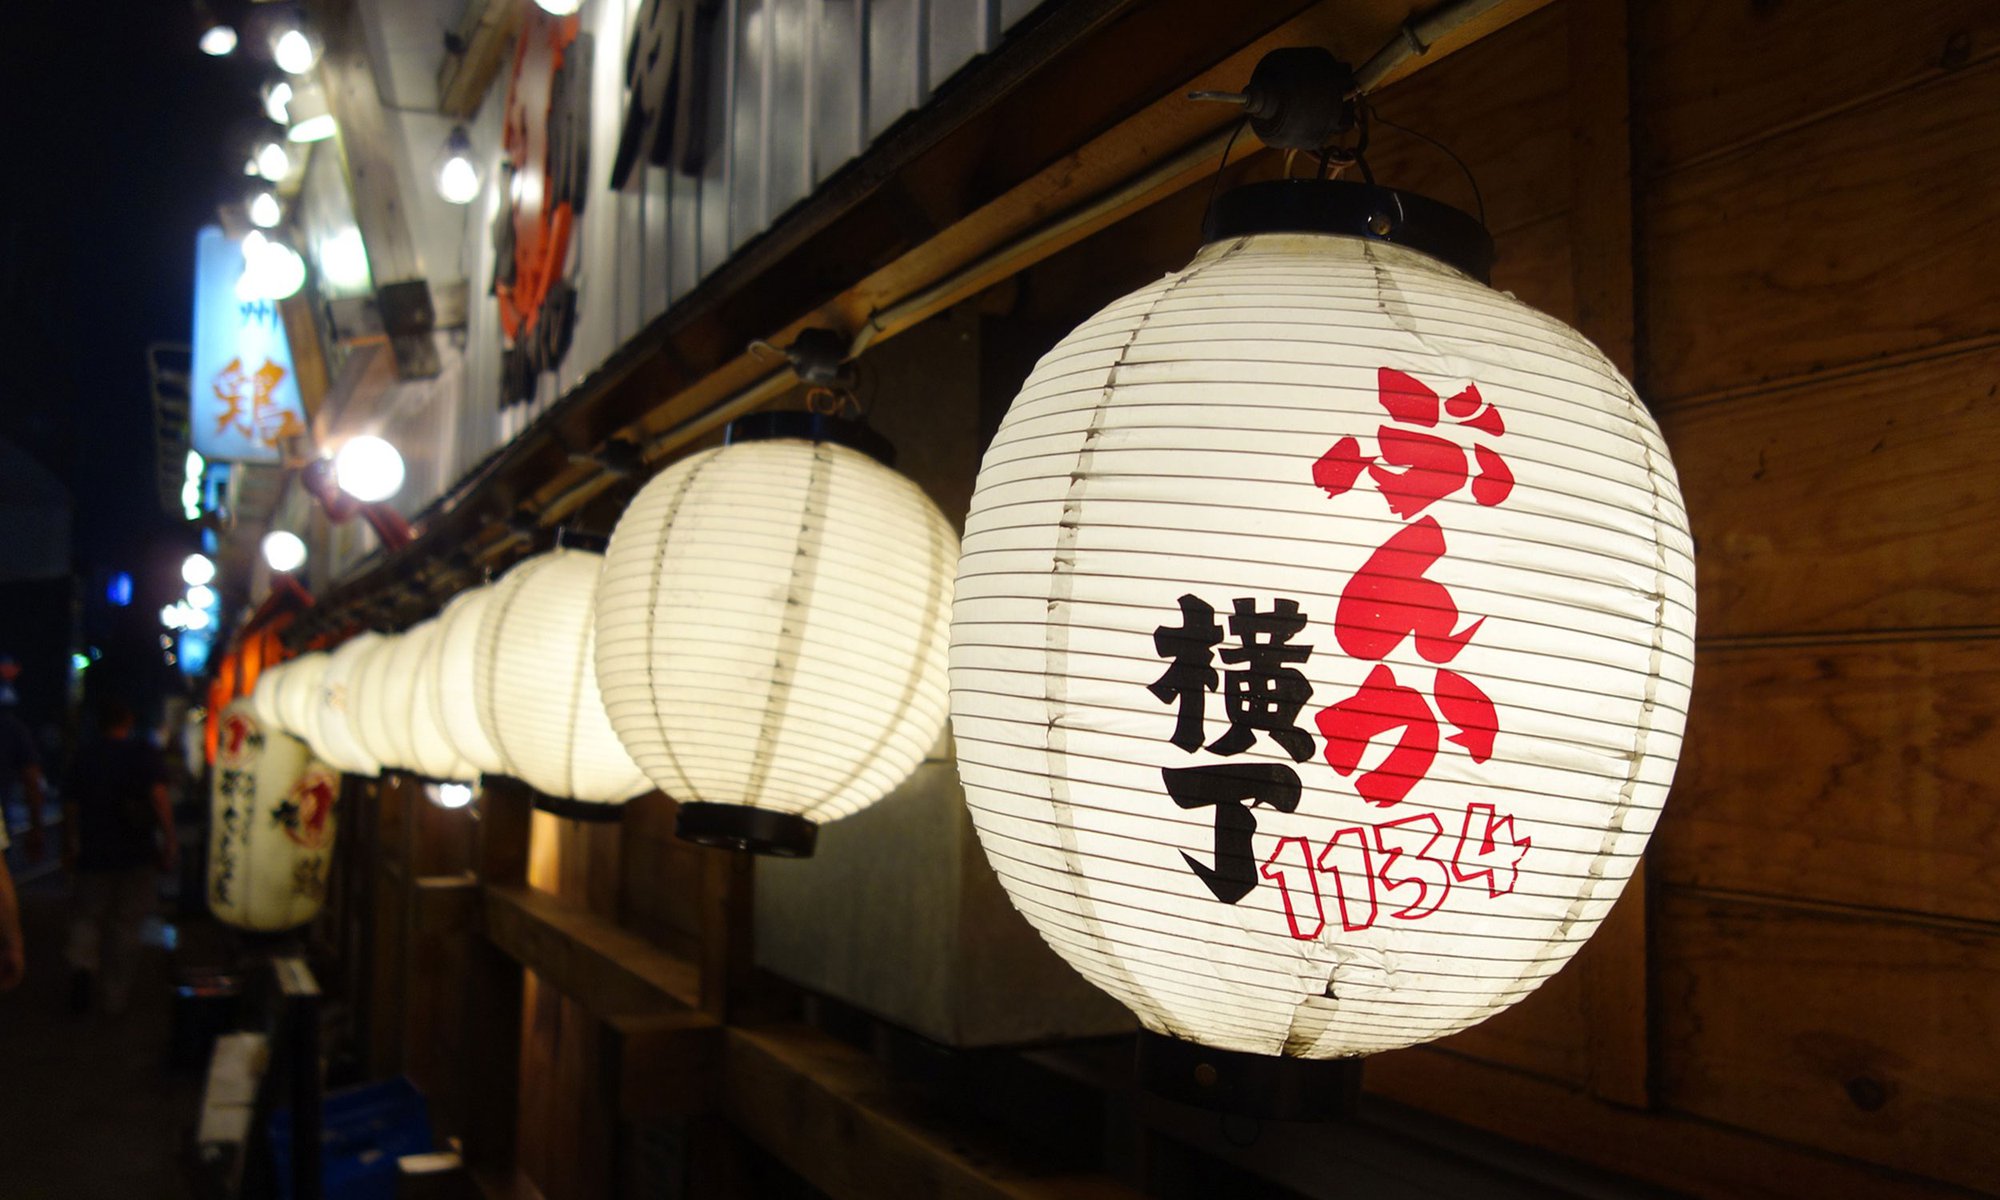 Japanese lanterns lit up at night